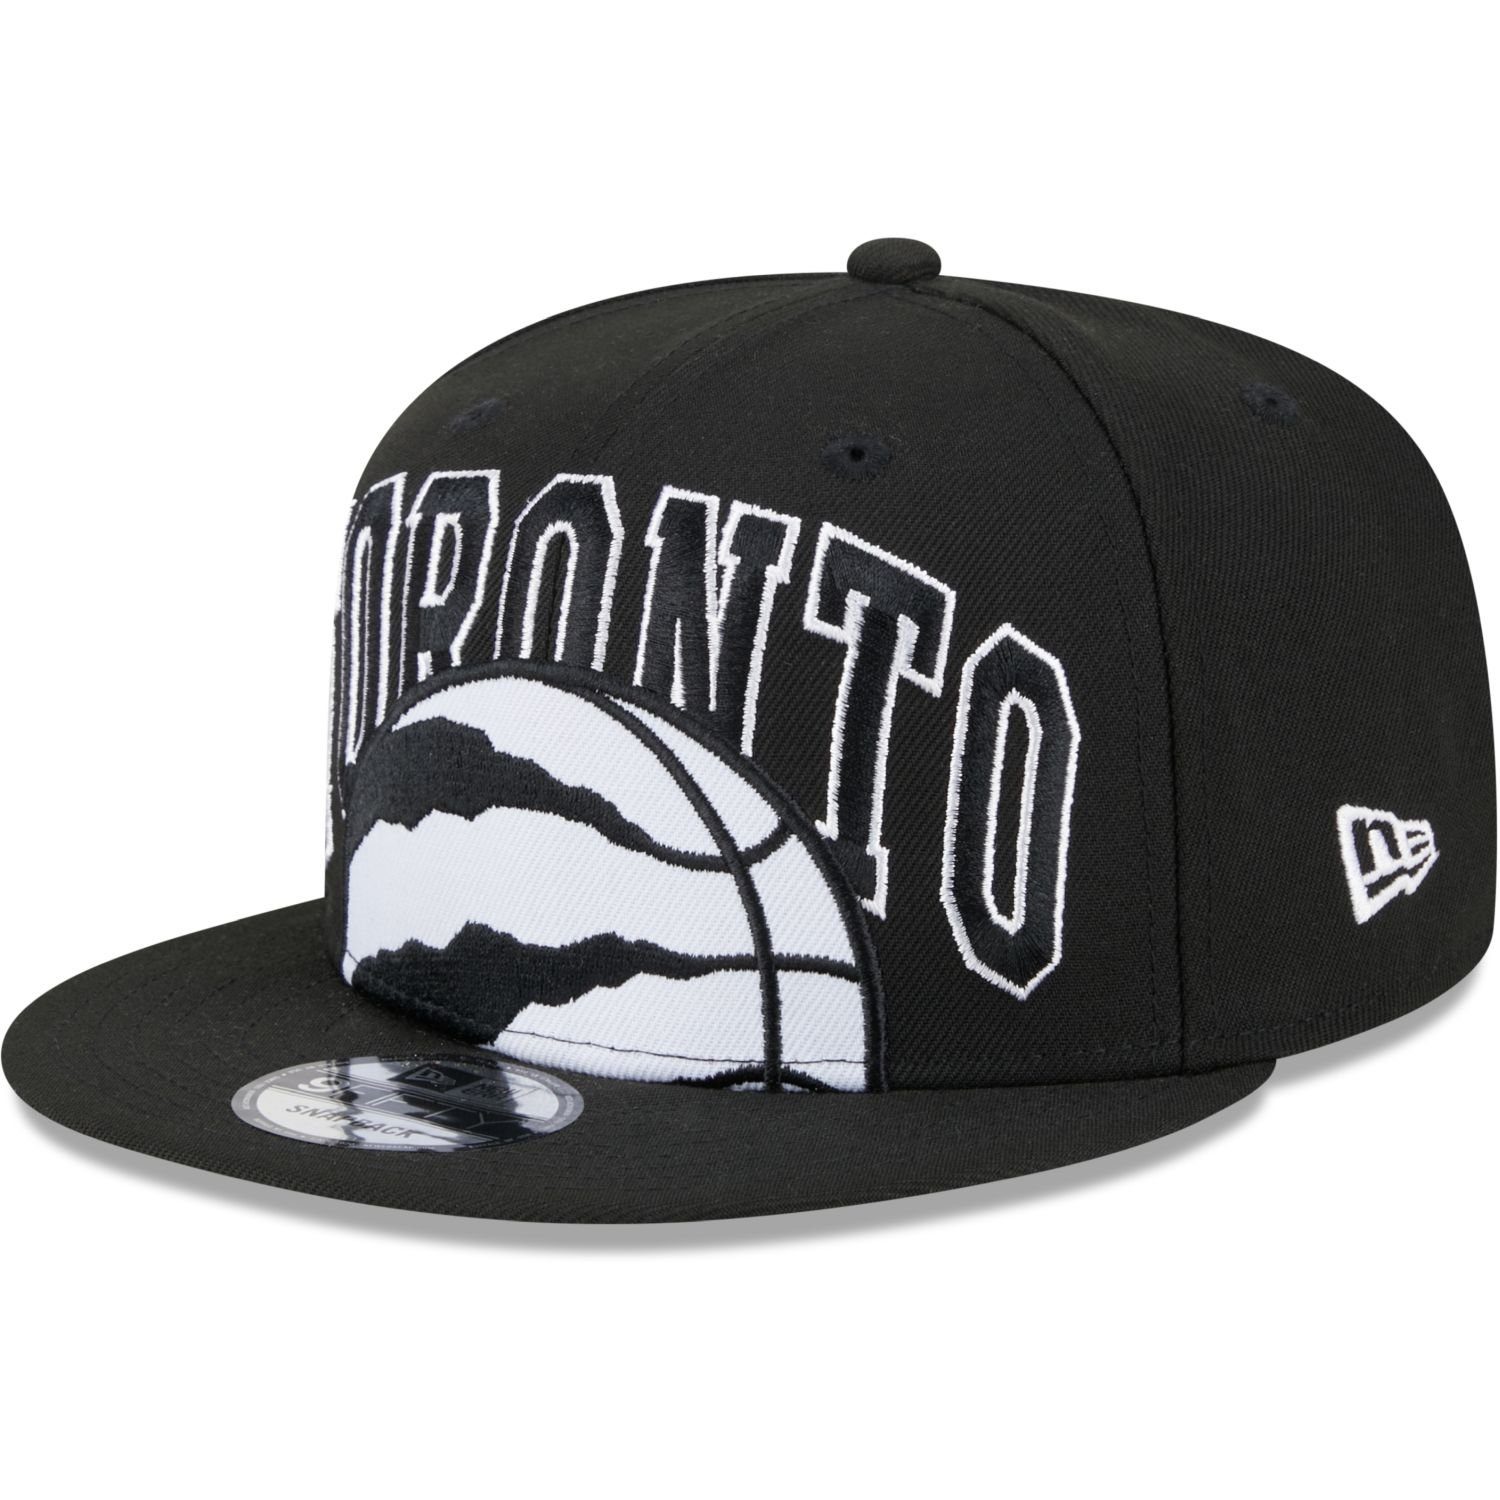 New Era Snapback Cap 9FIFTY NBA TIPOFF Toronto Raptors